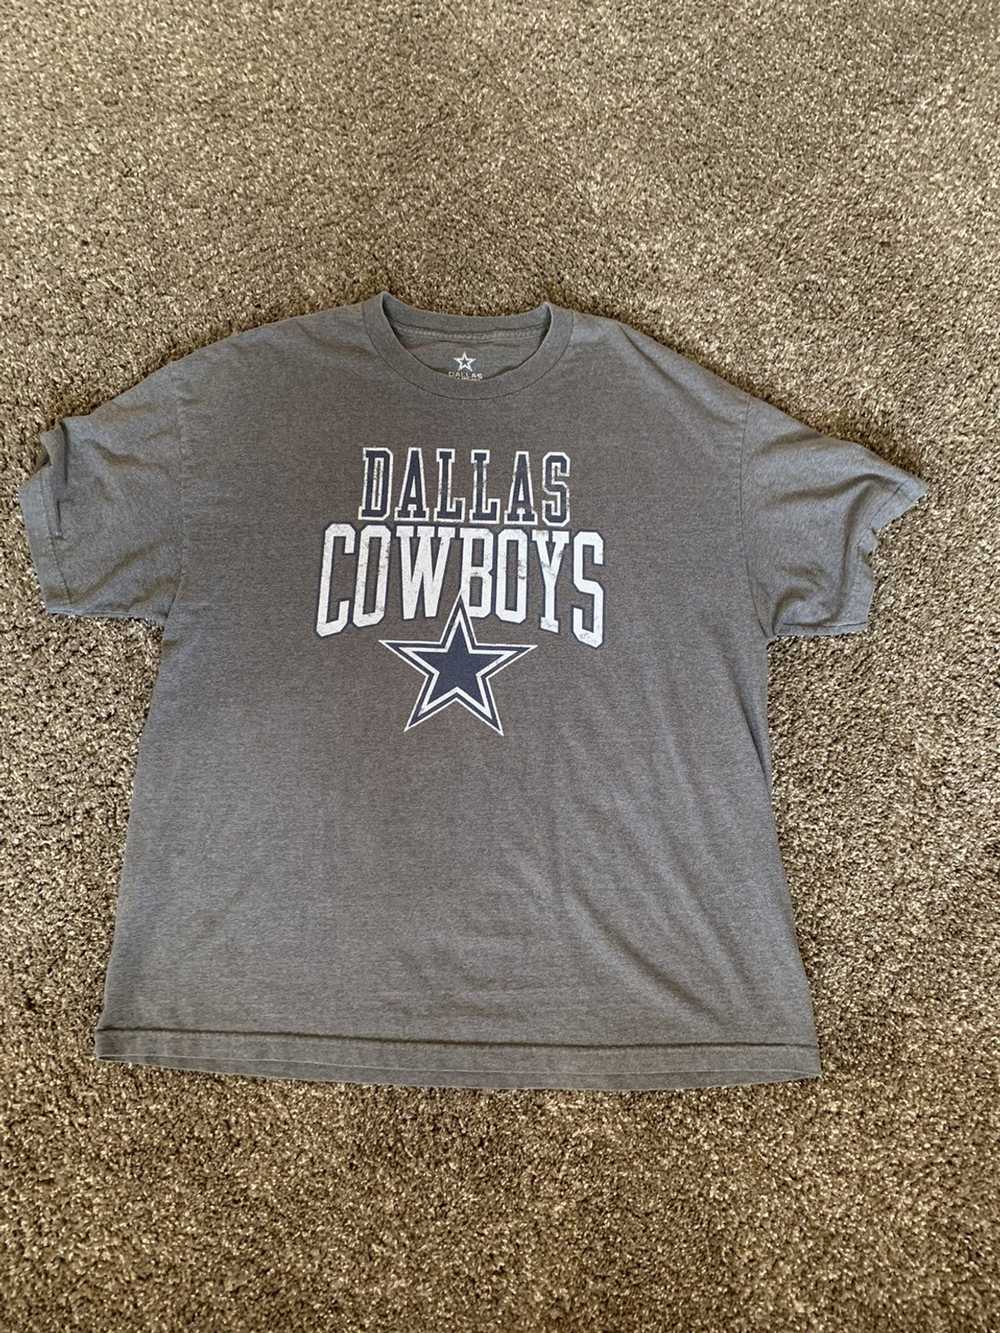 Vintage Dallas Cowboys Authentic Vintage T-Shirt - image 1